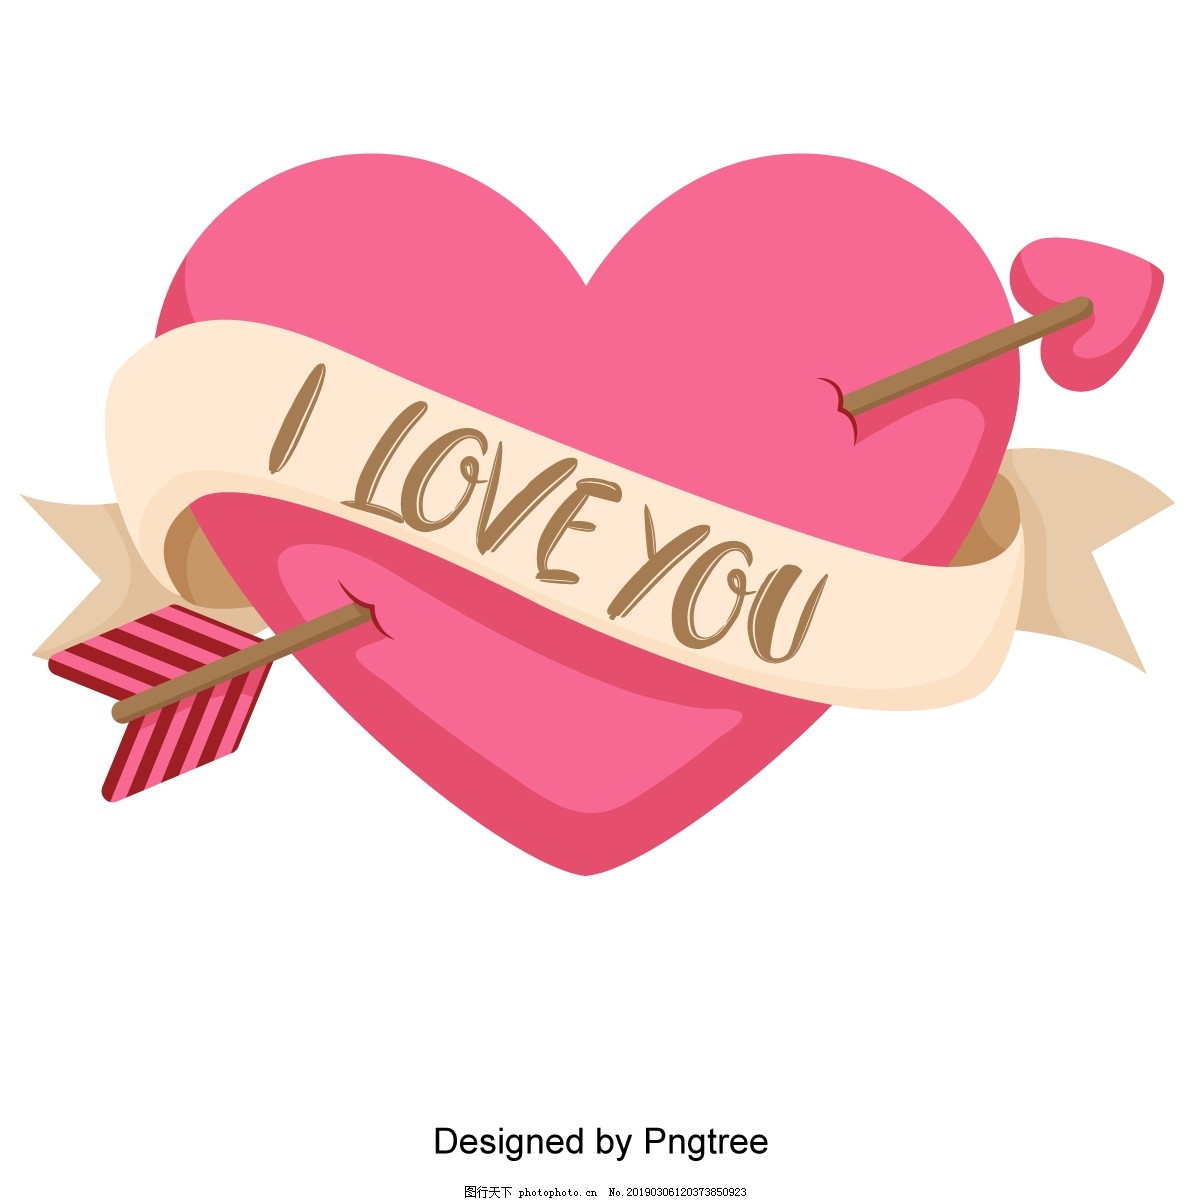 文本愛你, 愛你, 愛, 我愛你PNG去背圖片素材免費下載，免摳圖設計圖案下載 - Pngtree